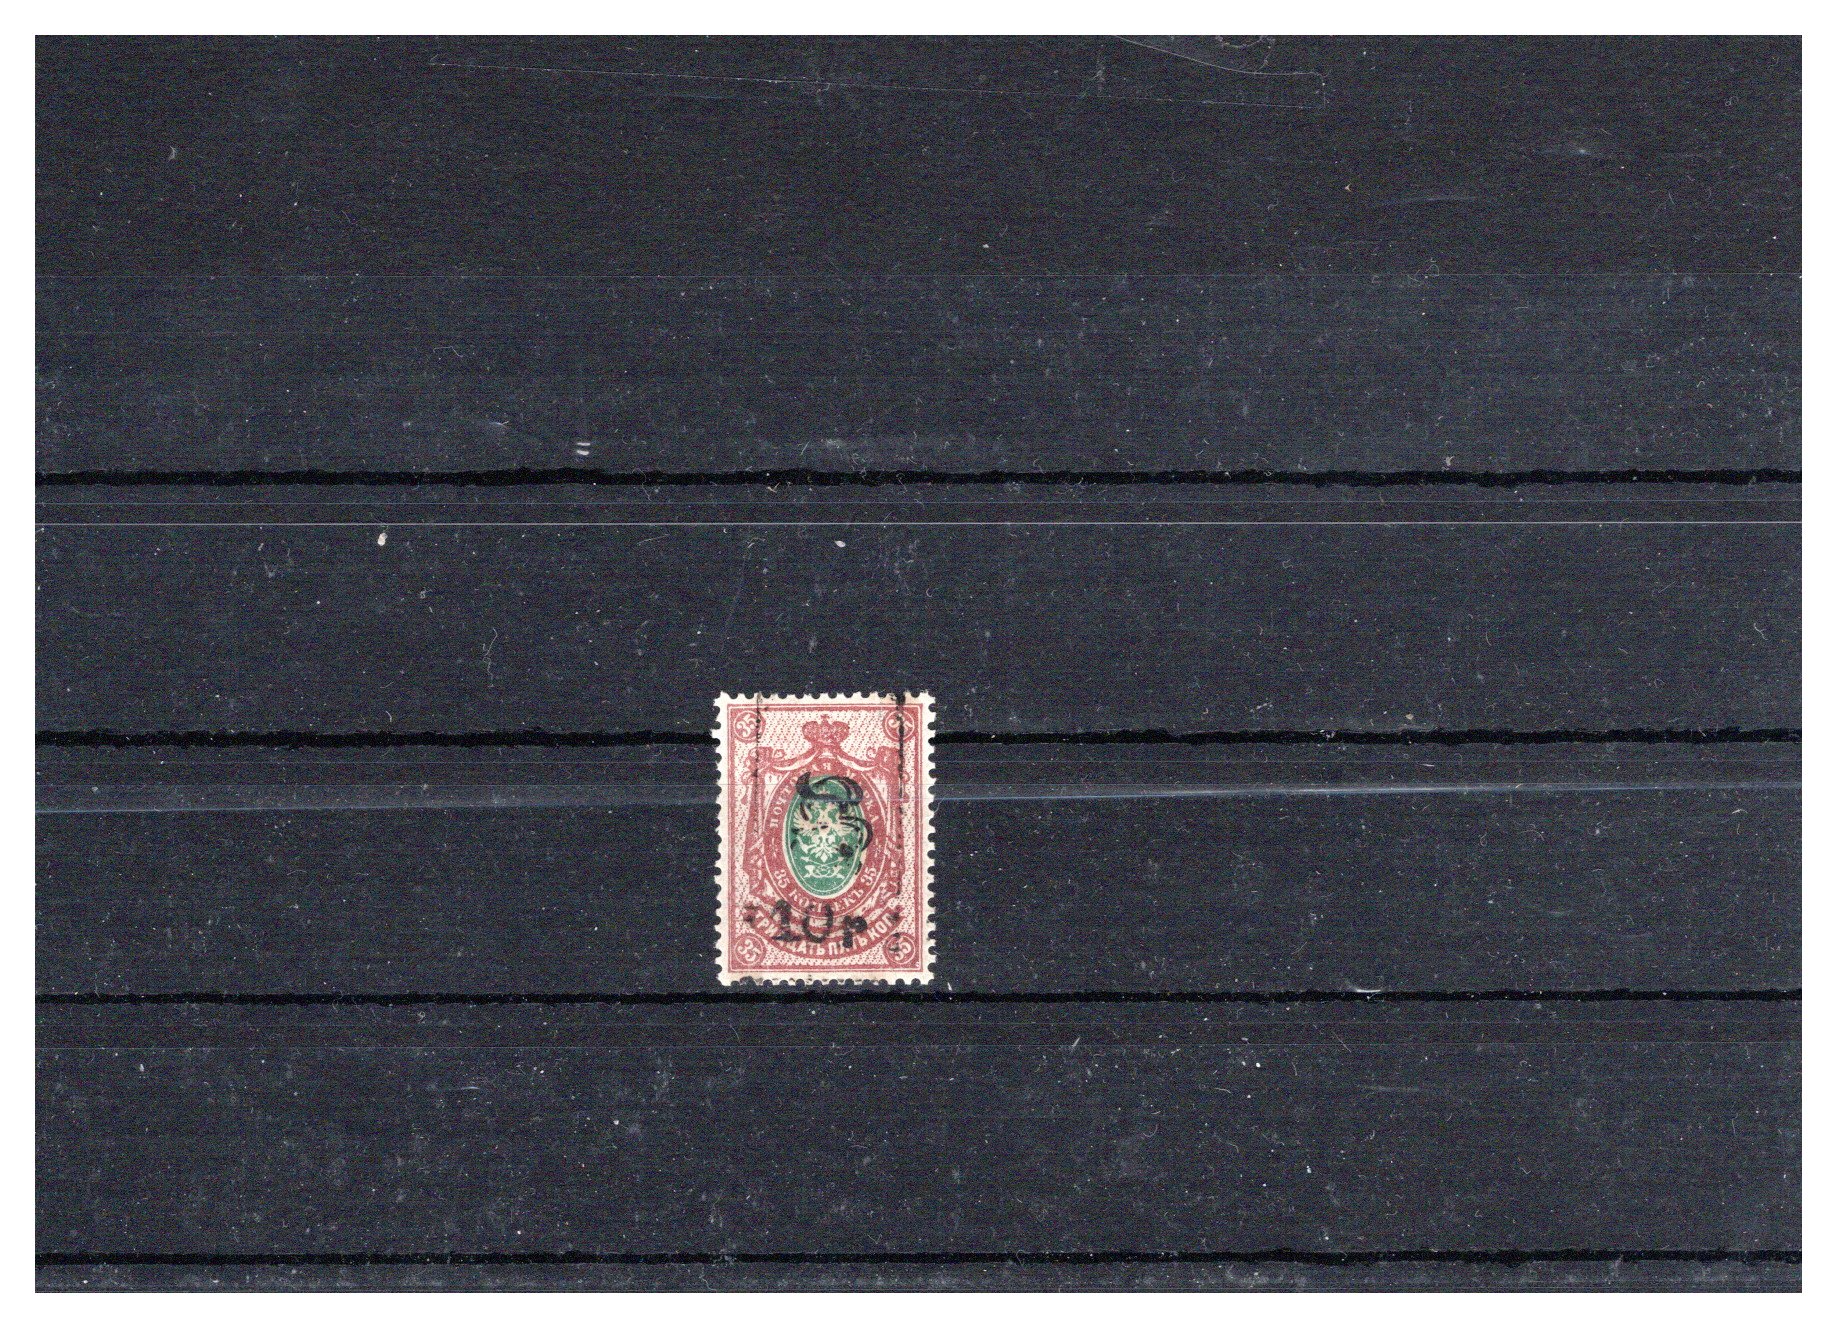 Lot 493 - Russia & Soviet Union armenia -  Georg Bühler Briefmarken Auktionen GmbH Georg Bühler 336 auction